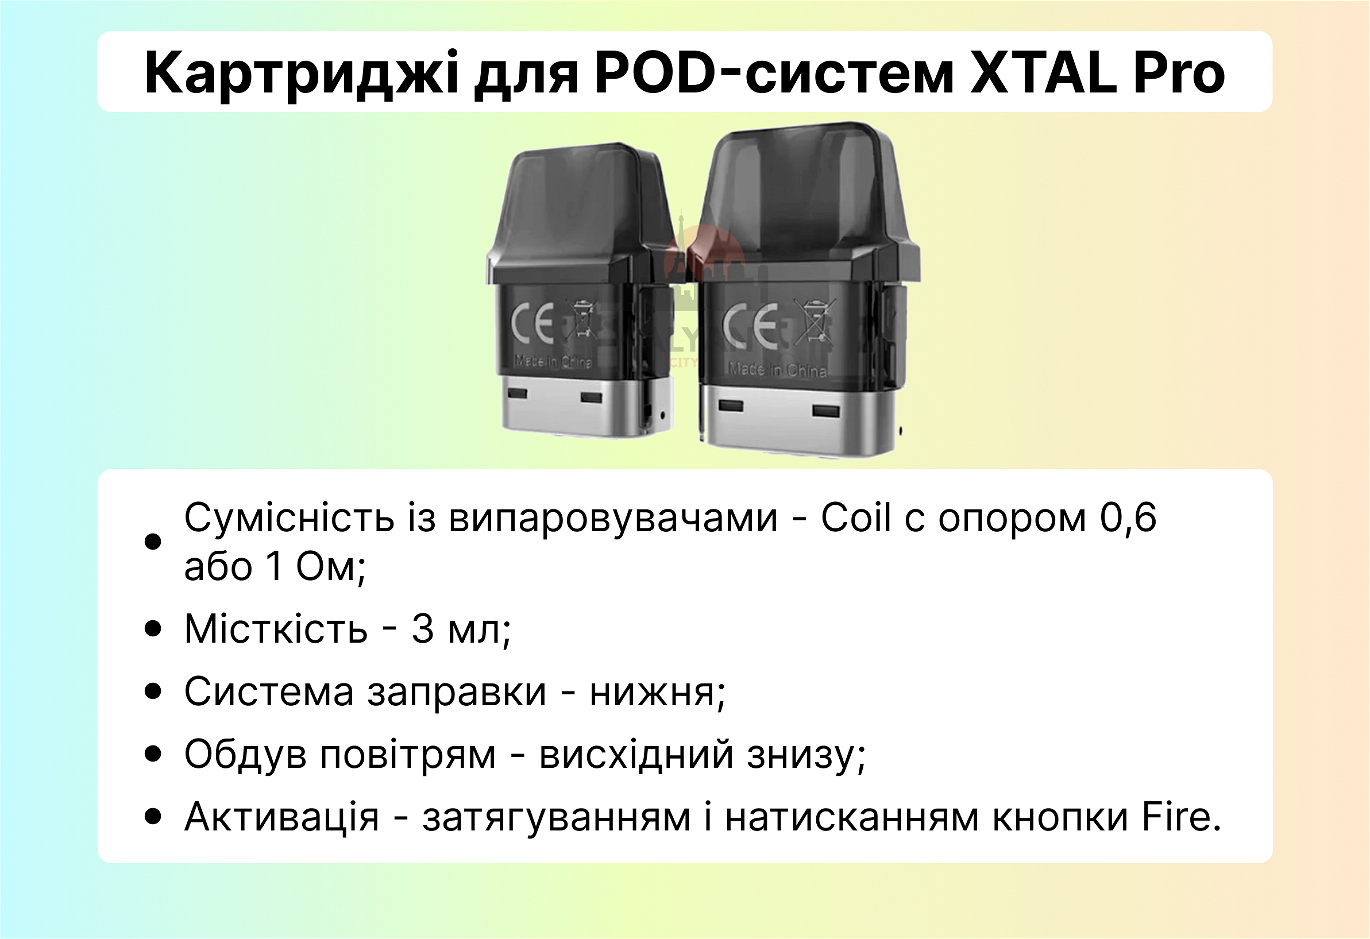 Картриджі для POD-систем XTAL Pro